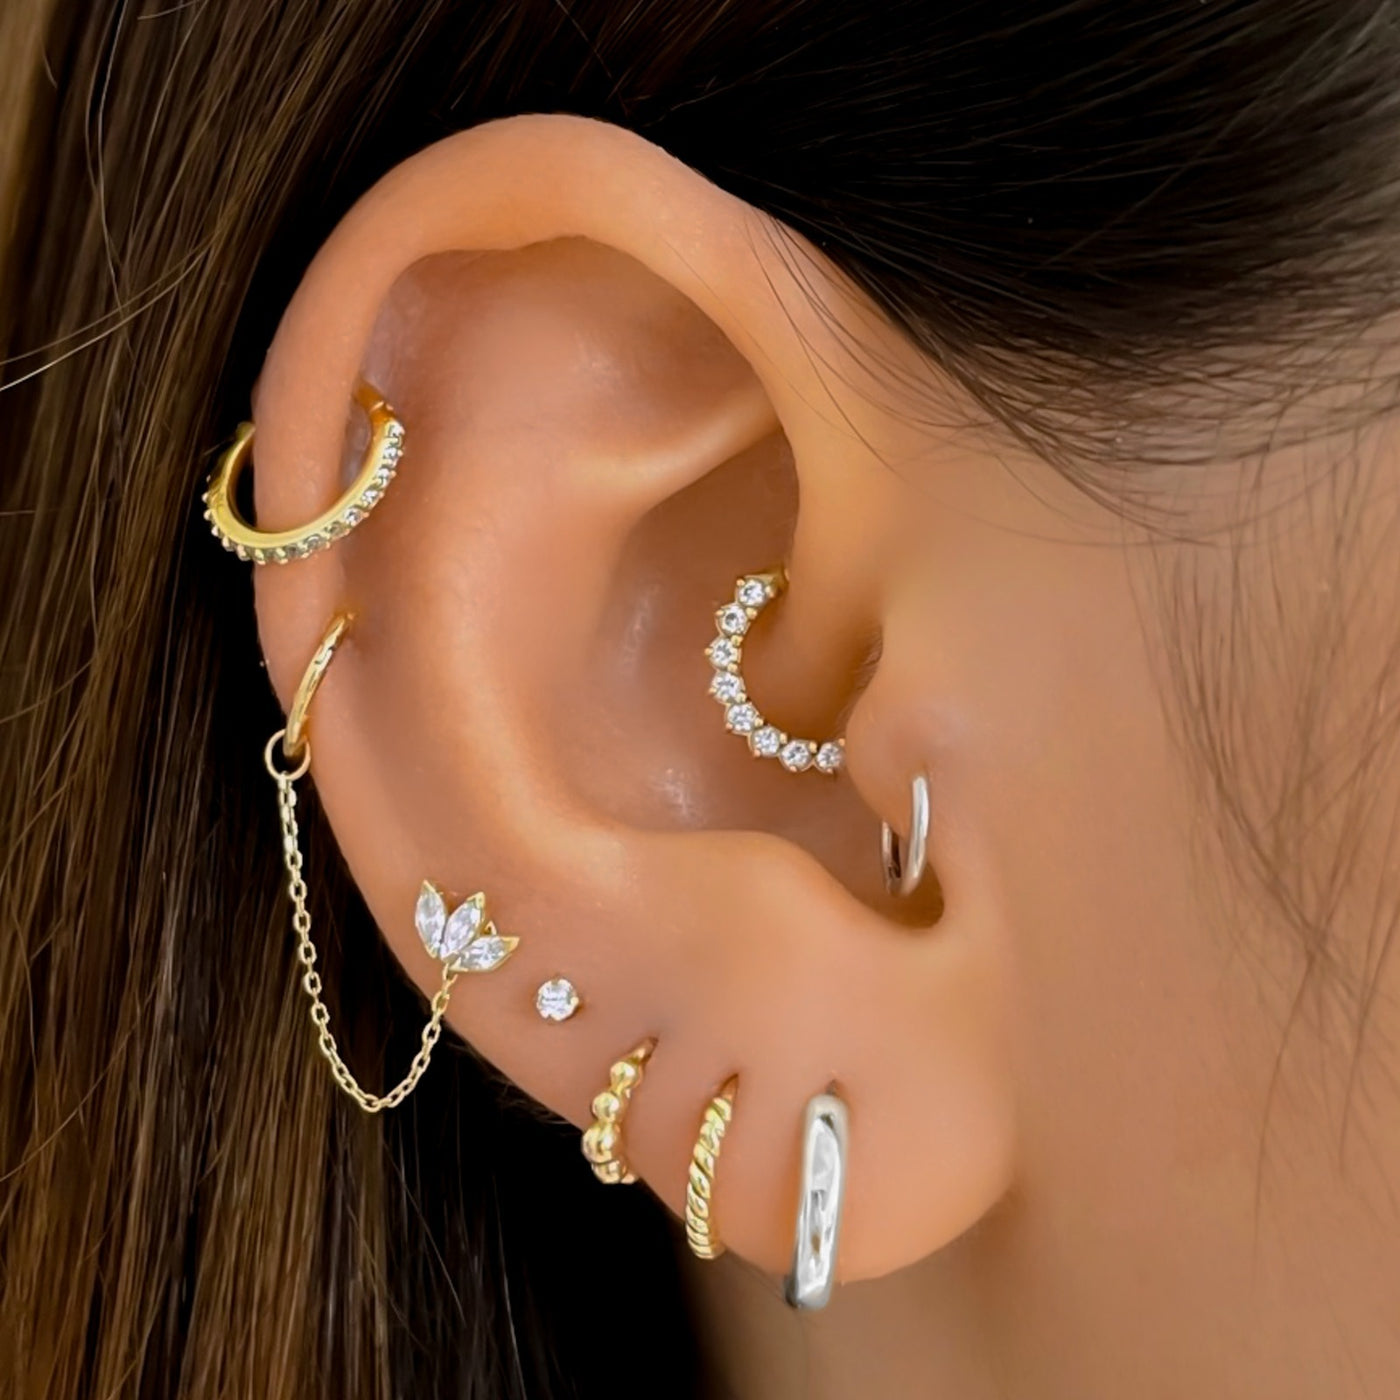 Sarah - 14k White Gold Everyday Huggie Earring